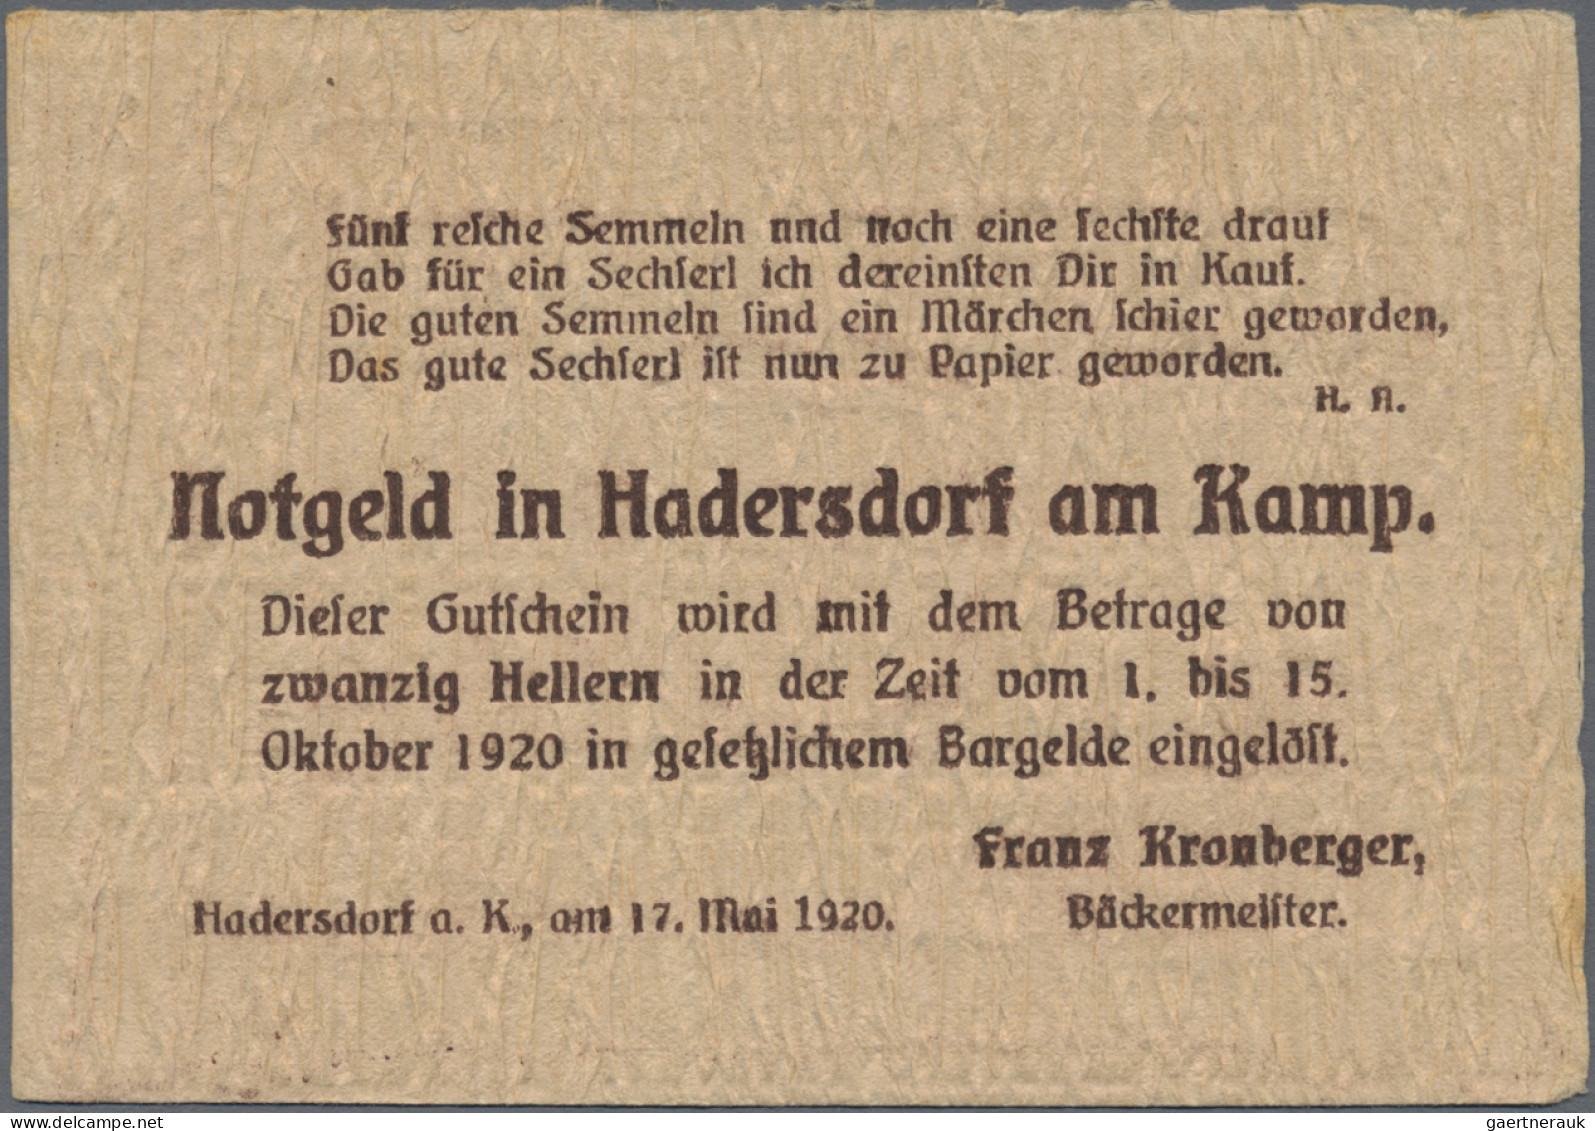 Austria: Hadersdorf Am Kamp, Franz Kronberger, 10, 20, 50 H., 17.5.1920, 10 H. W - Austria